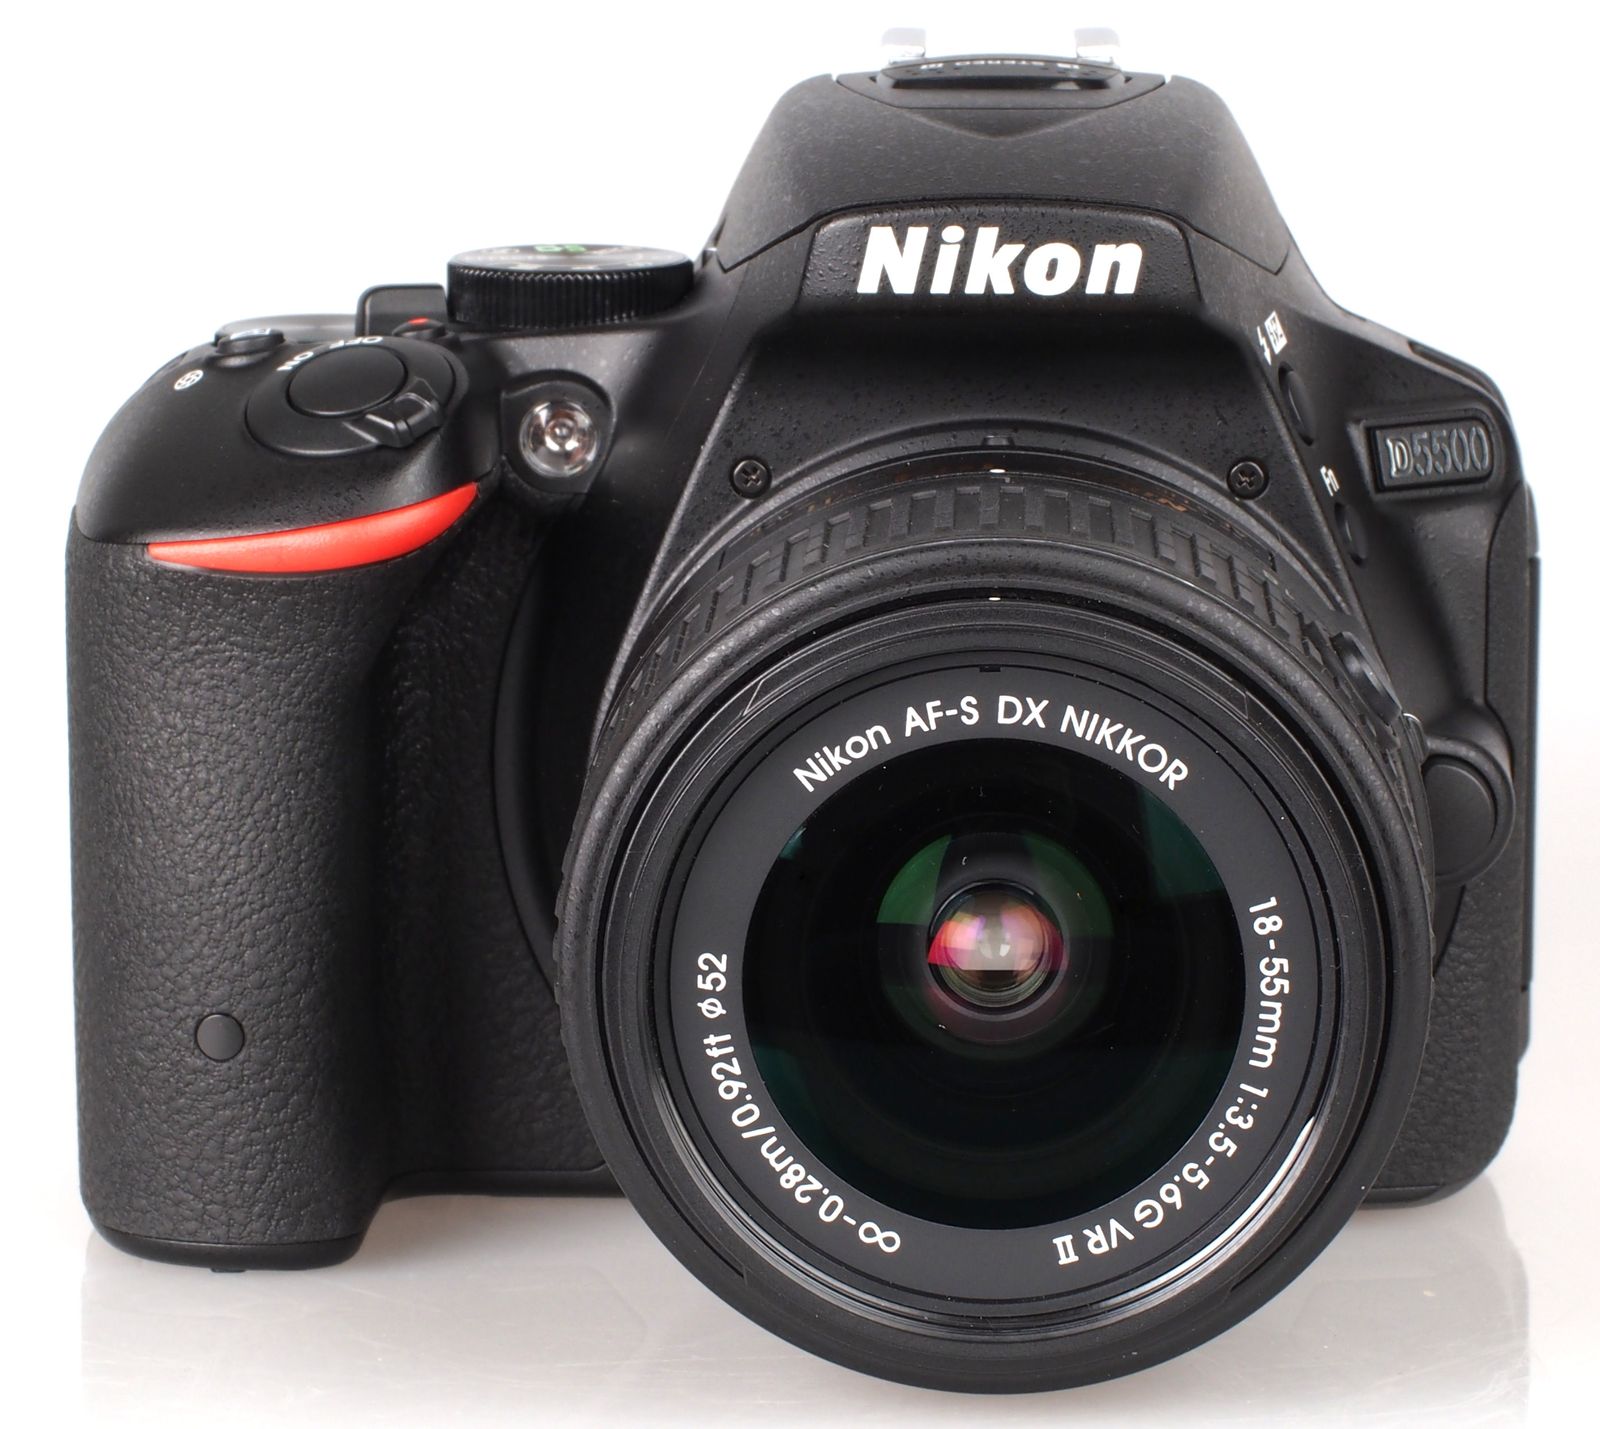 Nikon D5500 DSLR Review